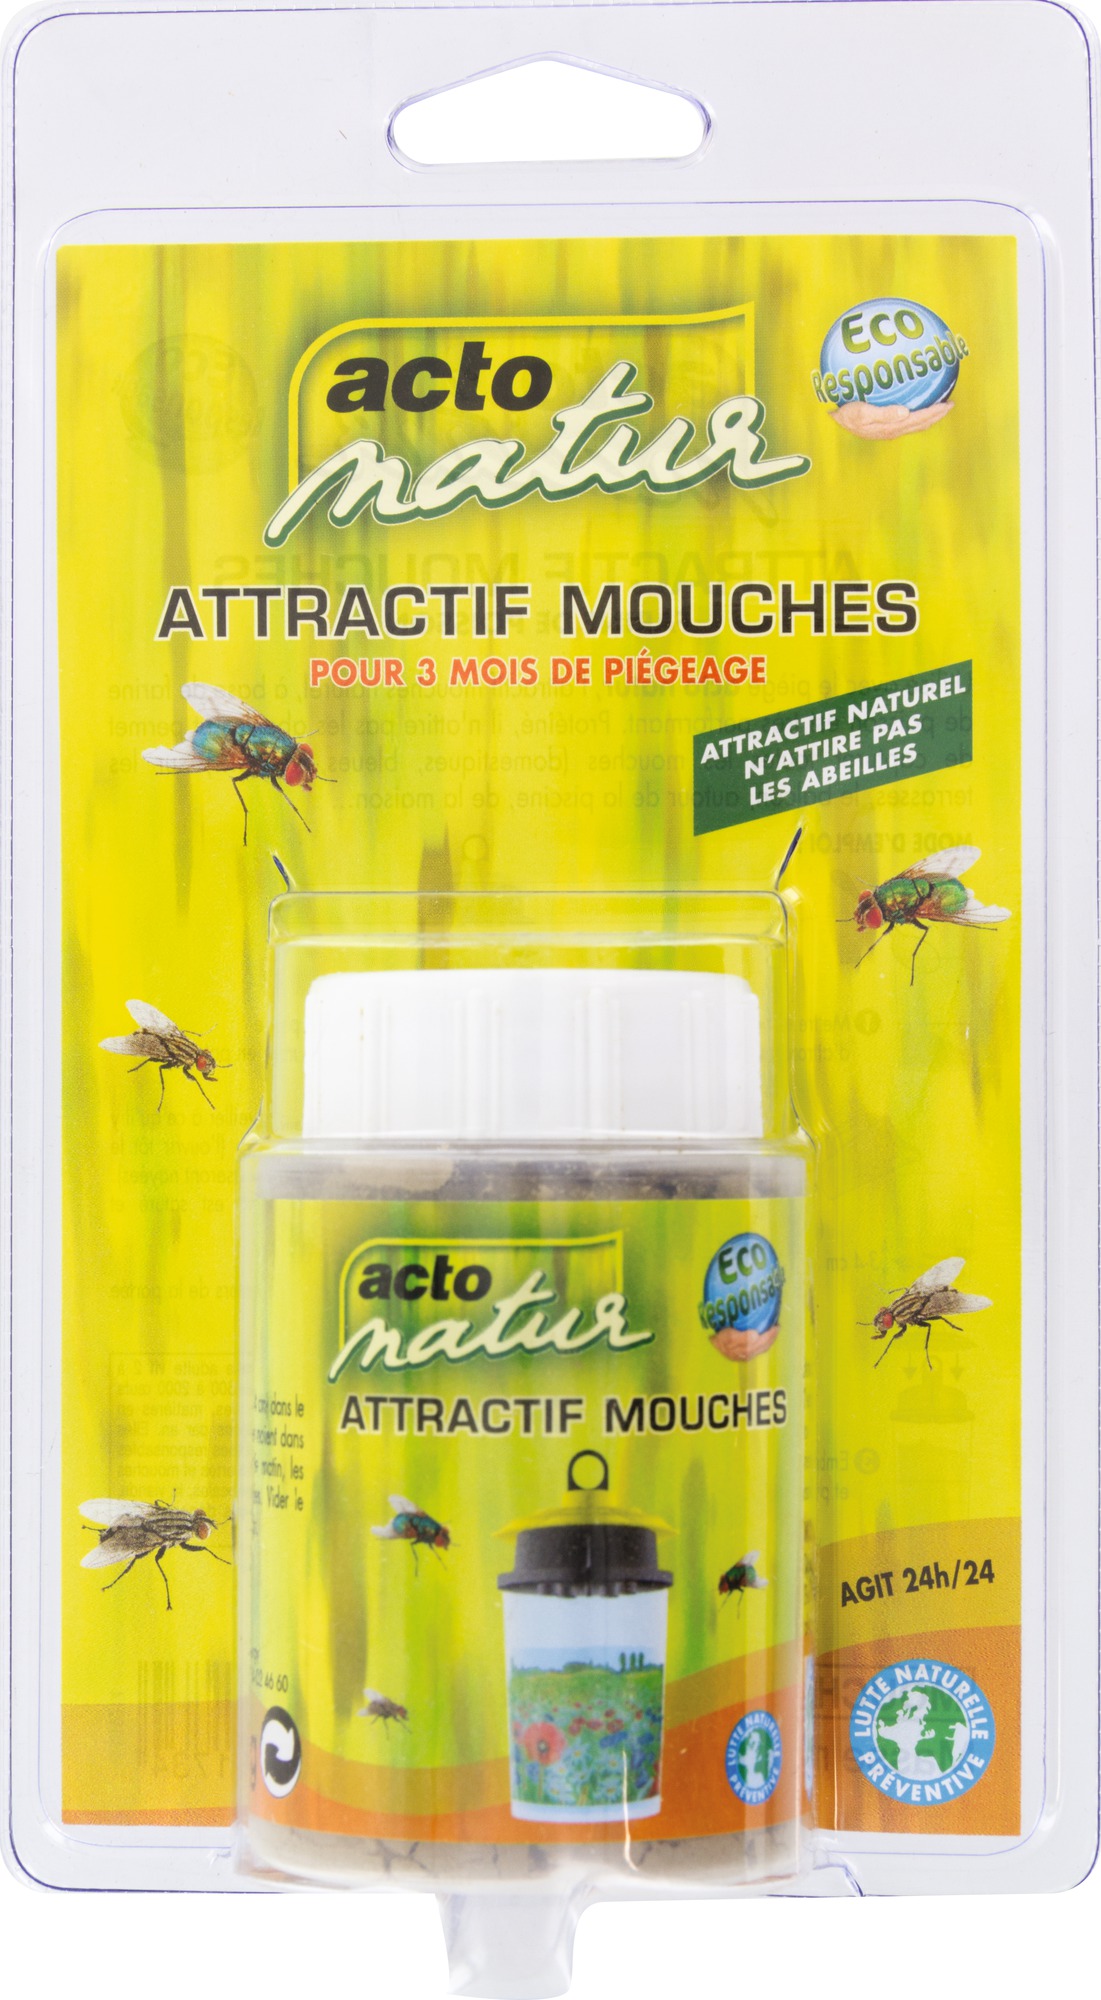 Attractif mouches pour piège Acto Natur - Flacon 60 g